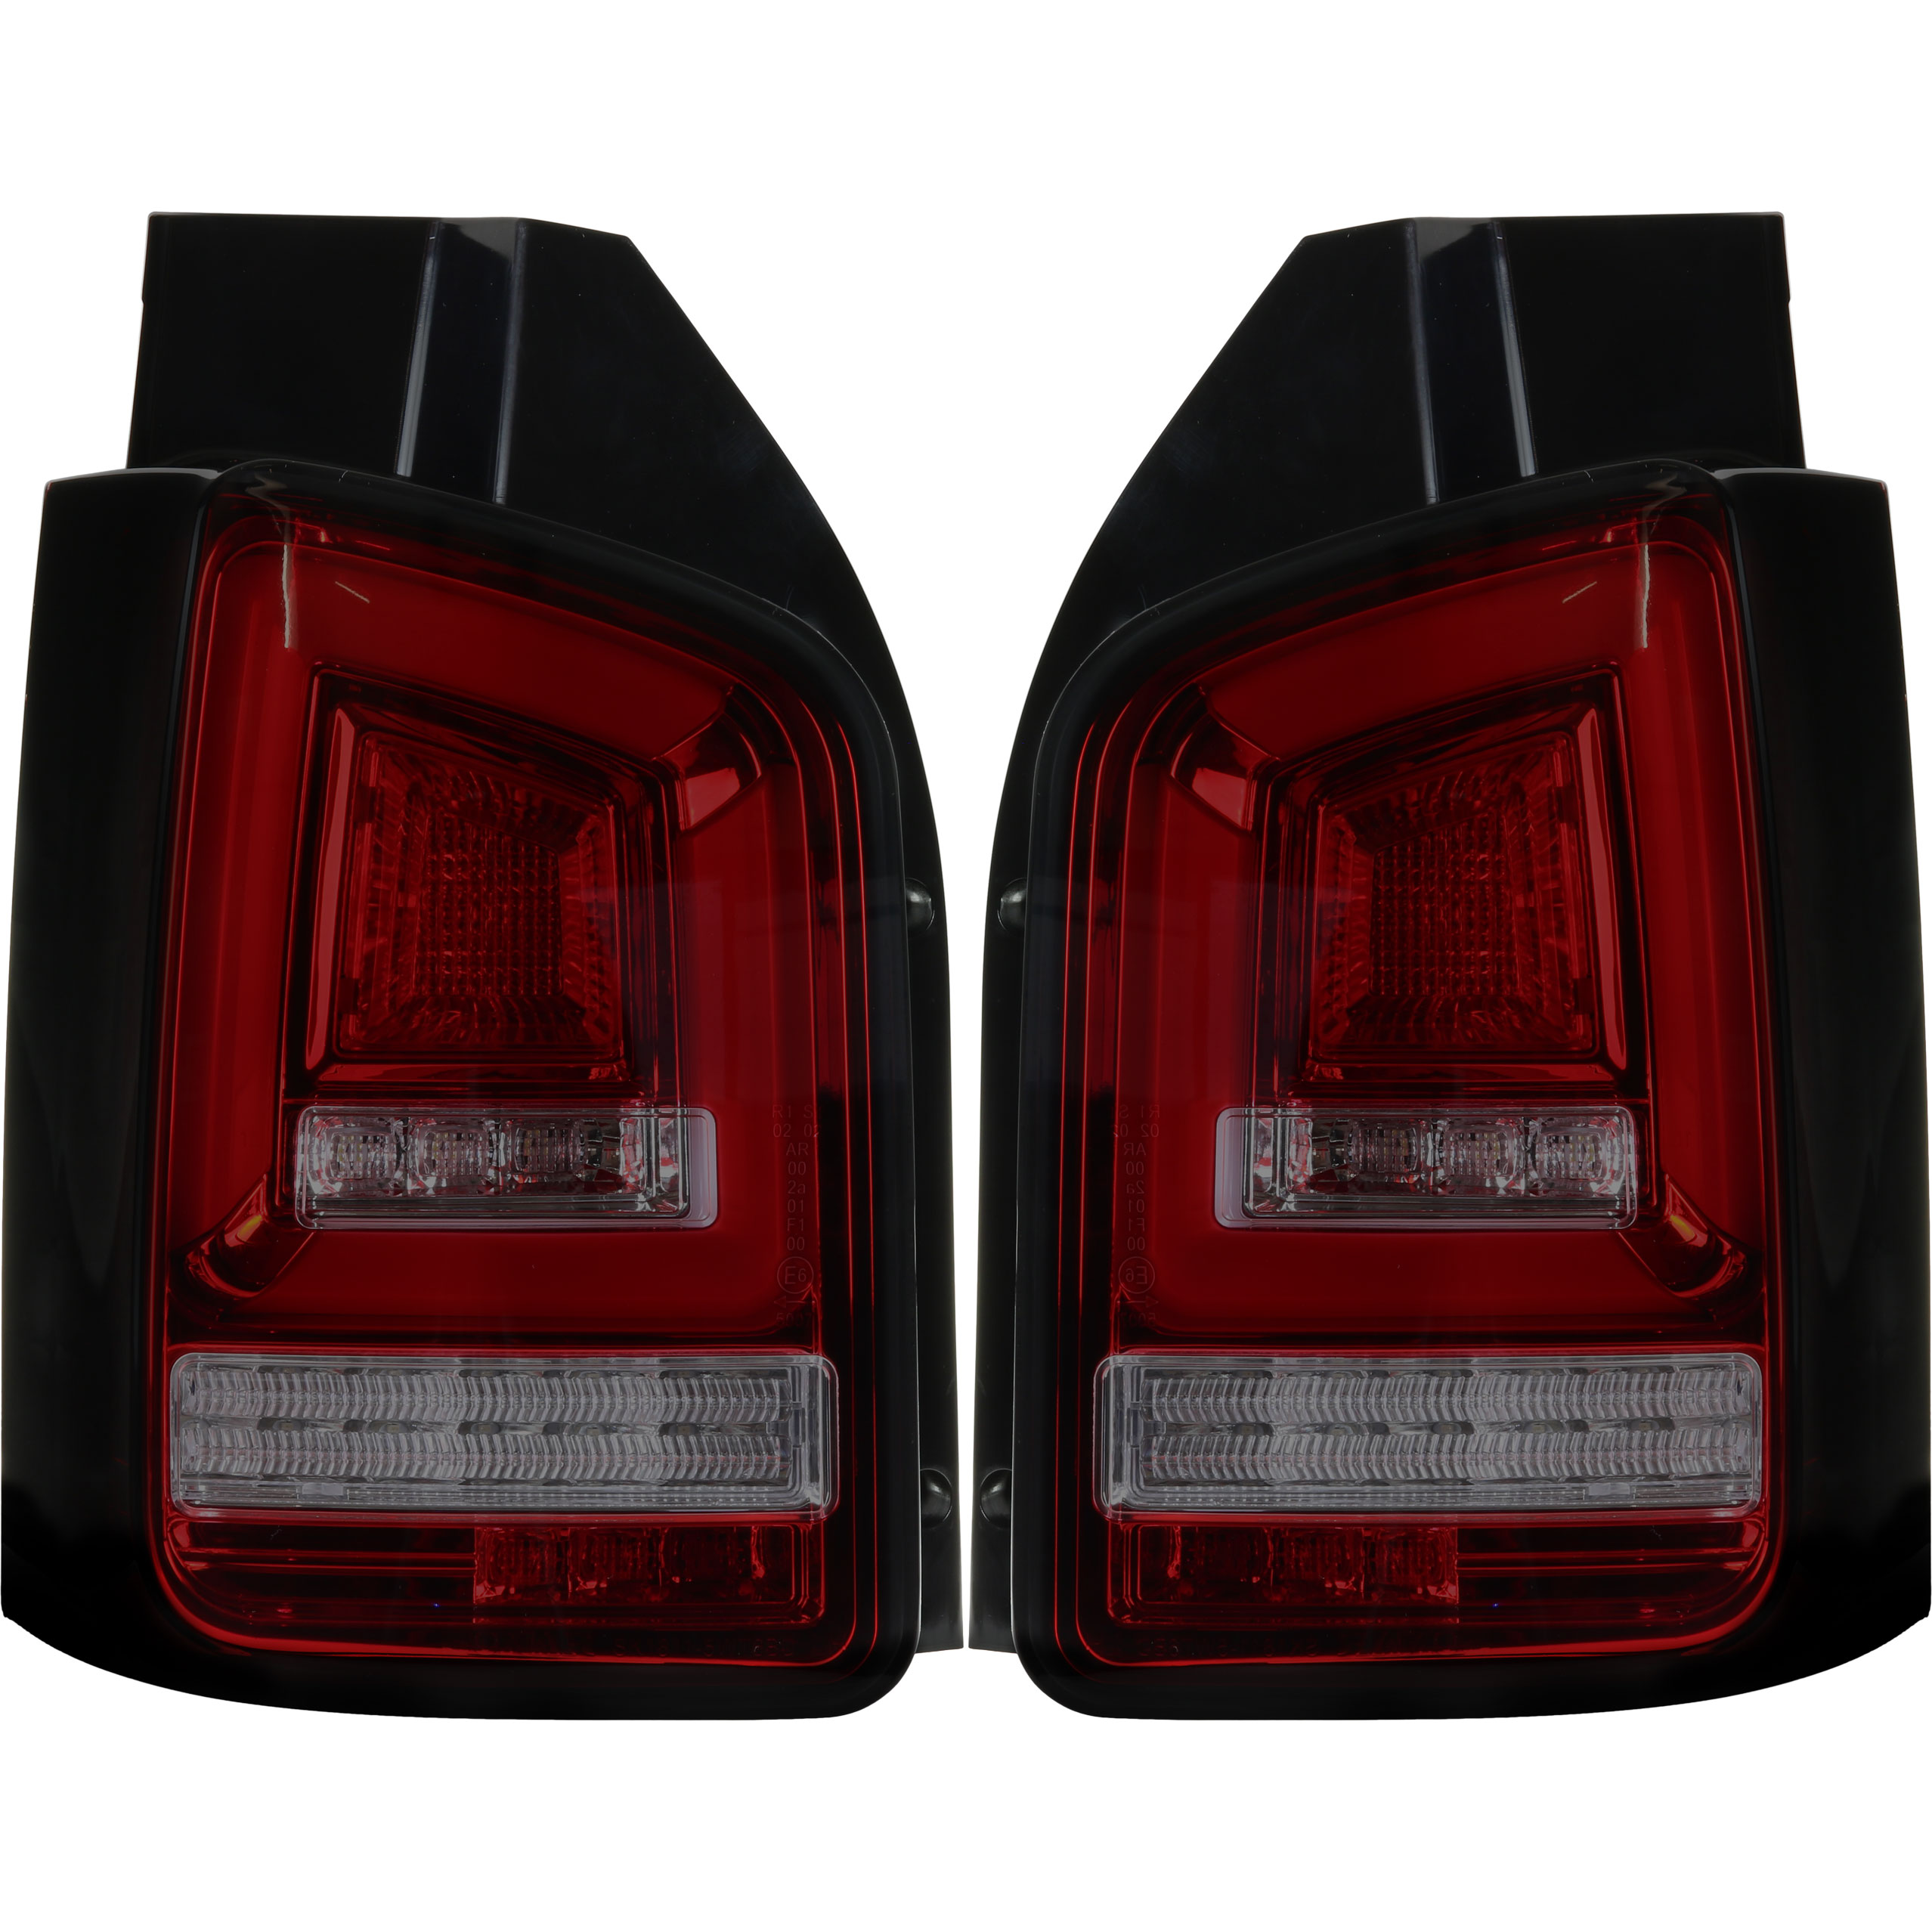 LED Rückleuchten Heckleuchten in Rot Facelift Optik für VW T5 mit  Heckklappe ab 2003-2009